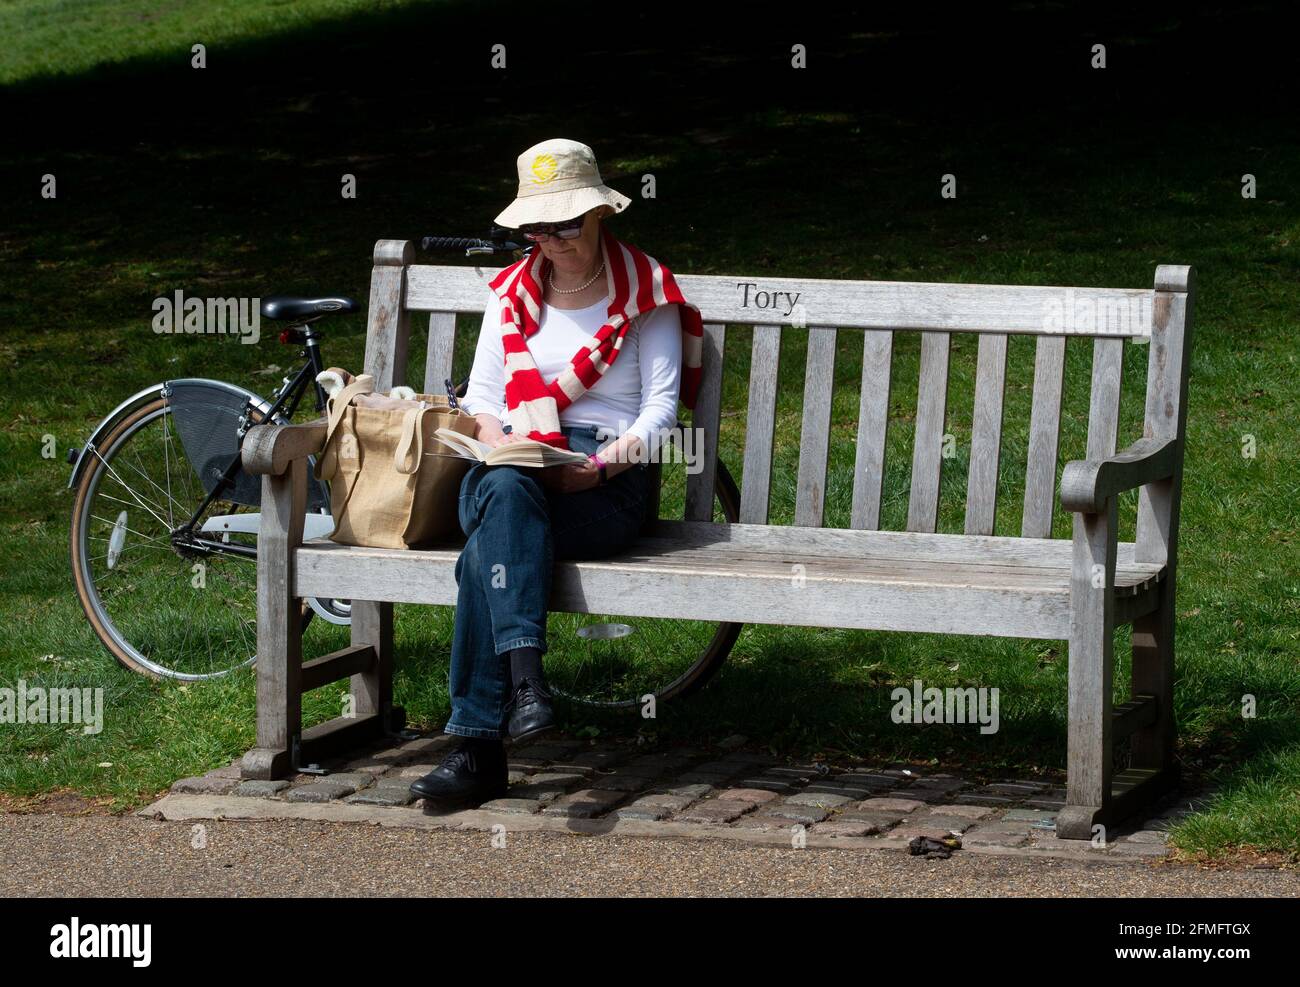 London, Großbritannien. Mai 2021. Eine Frau sitzt auf einer Bank, auf der das Wort „Tory“ steht. Die Menschen genießen das schöne Wetter im Hyde Park, London, da die Temperaturen auf 19 Grad Celsius eingestellt sind. Dies kommt nach dem kältesten April seit mehr als 50 Jahren. Kredit: Mark Thomas/Alamy Live Nachrichten Stockfoto